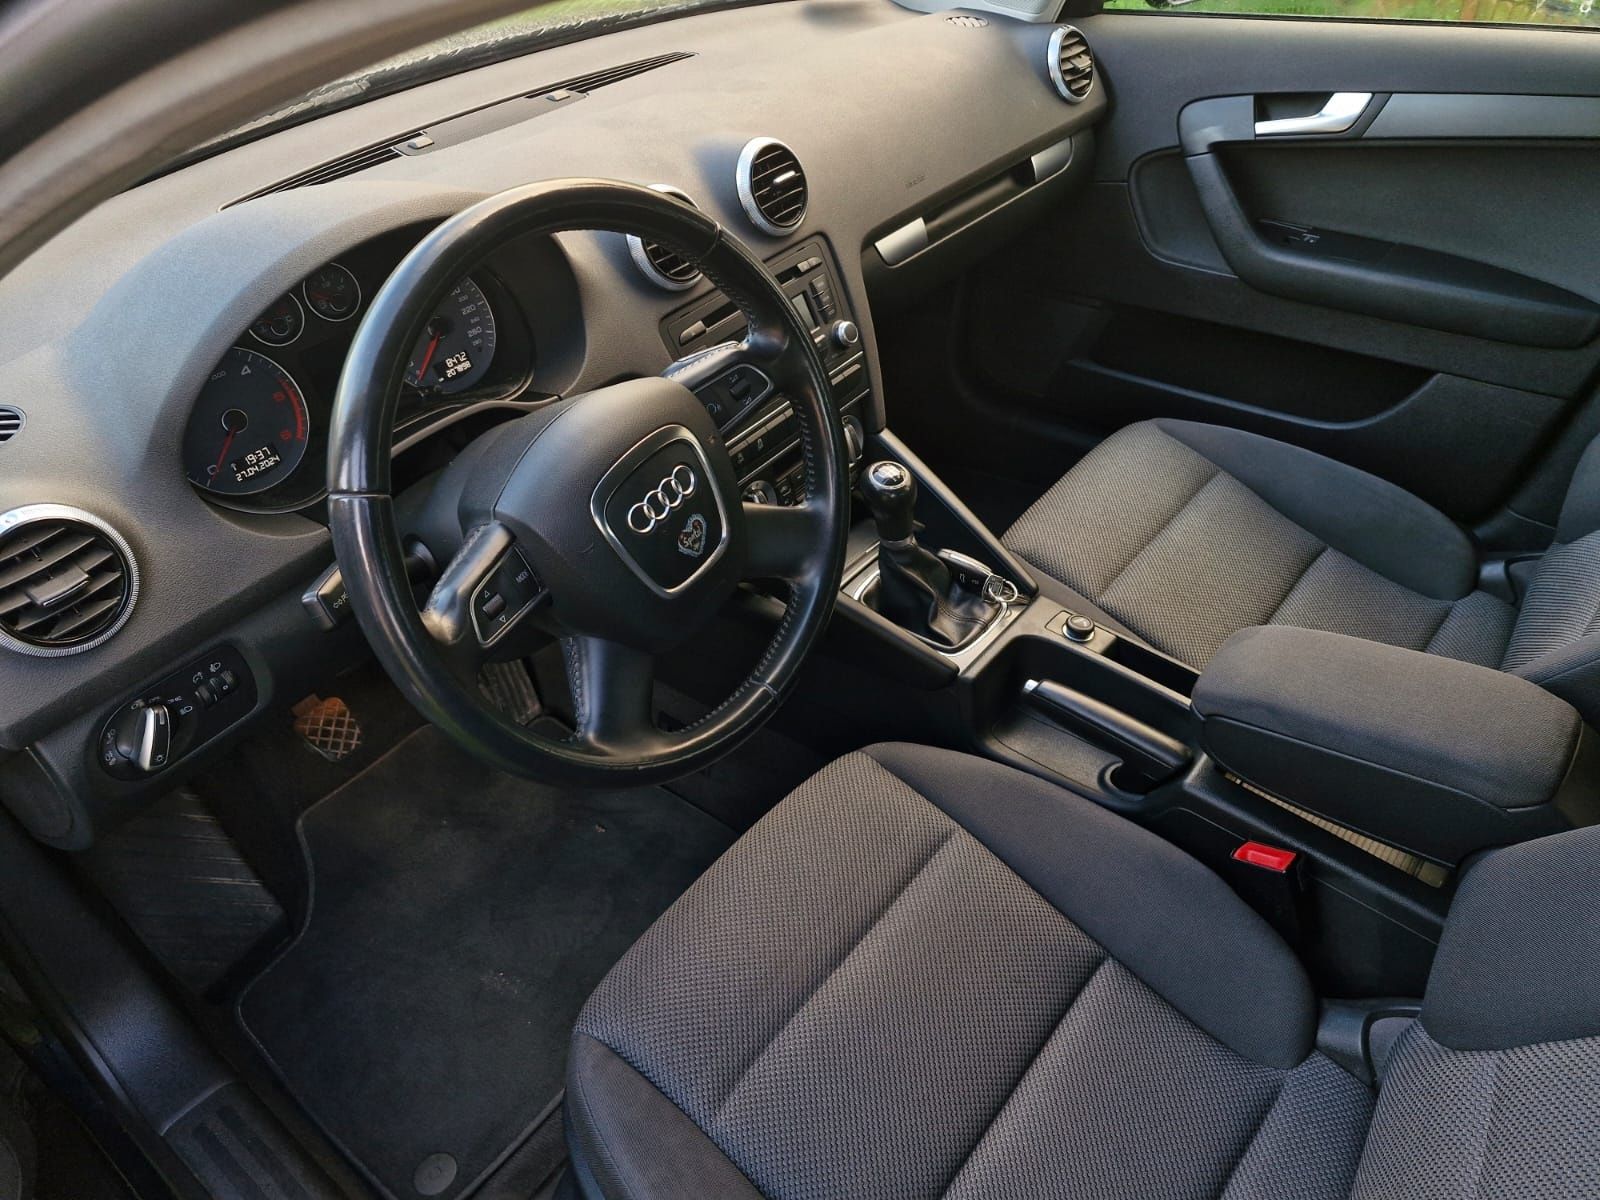 Audi a3 2.0 TDI 2012R 207 tys km 2 Wlasciel stan bdb